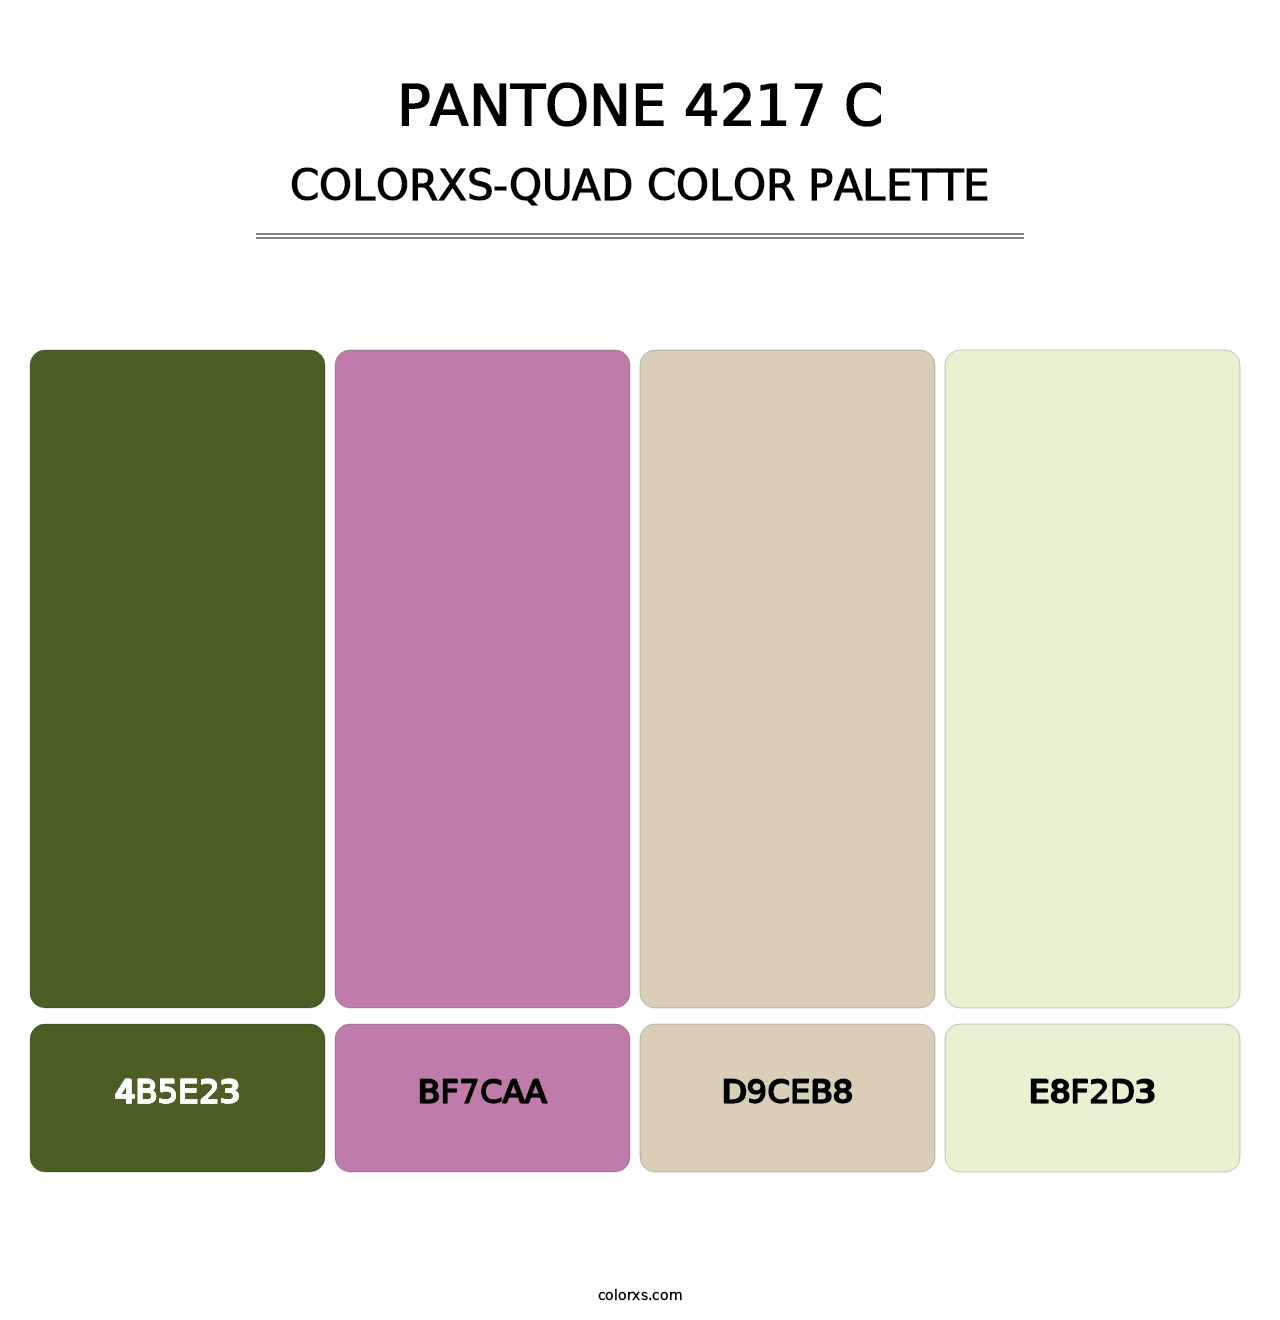 PANTONE 4217 C - Colorxs Quad Palette